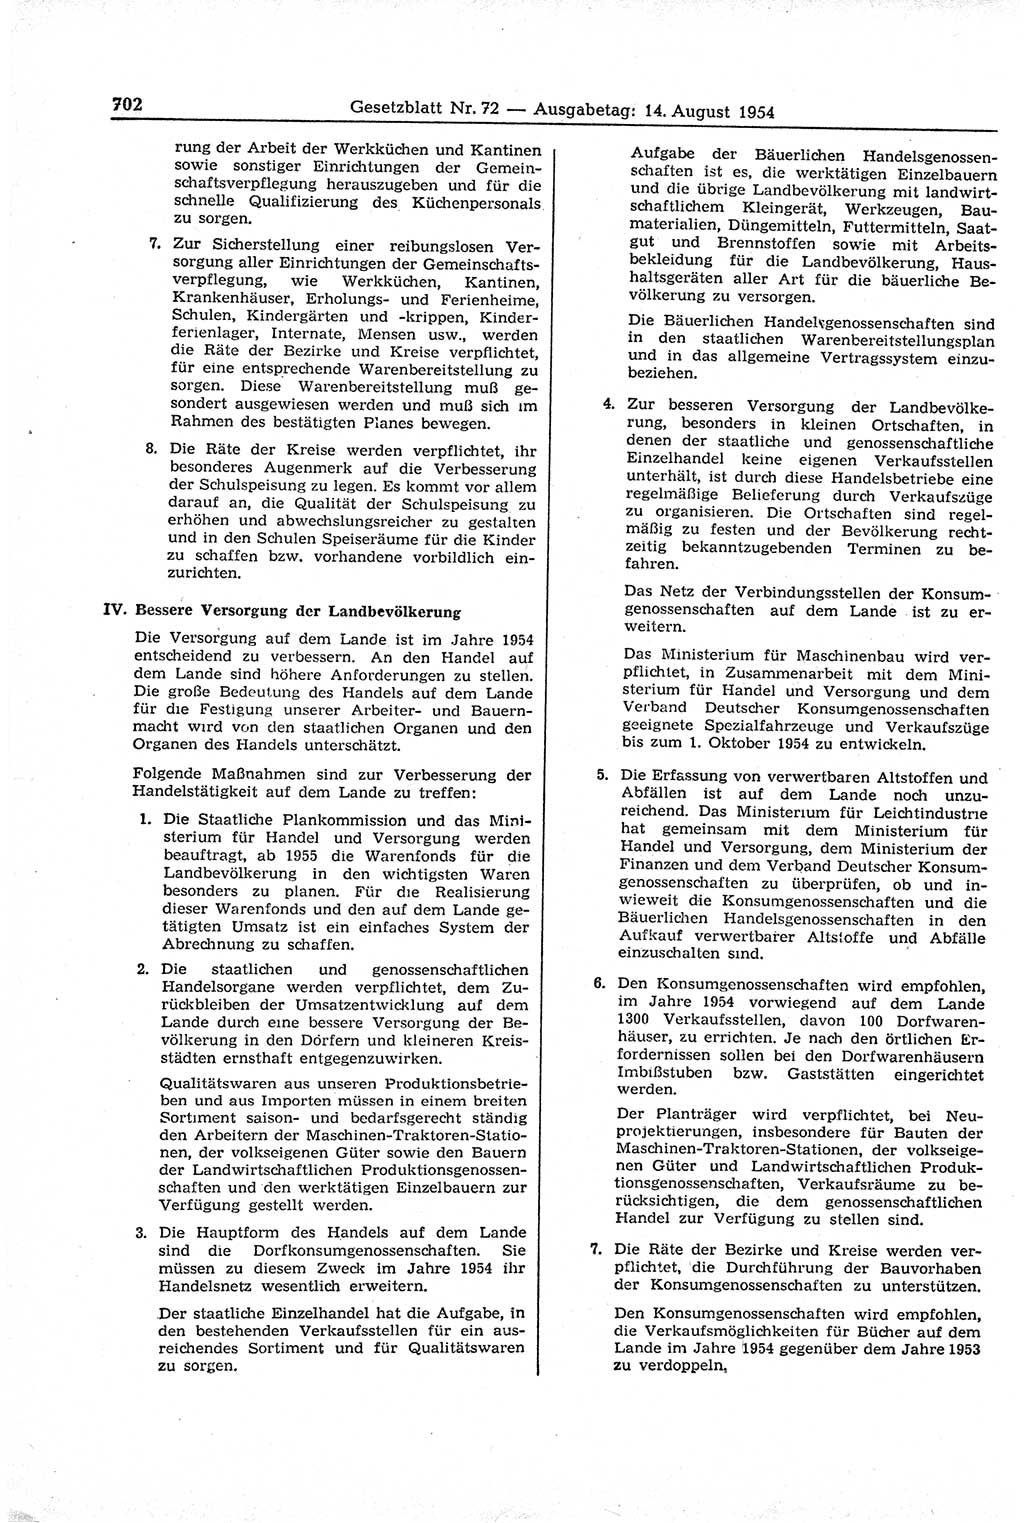 Gesetzblatt (GBl.) der Deutschen Demokratischen Republik (DDR) 1954, Seite 702 (GBl. DDR 1954, S. 702)